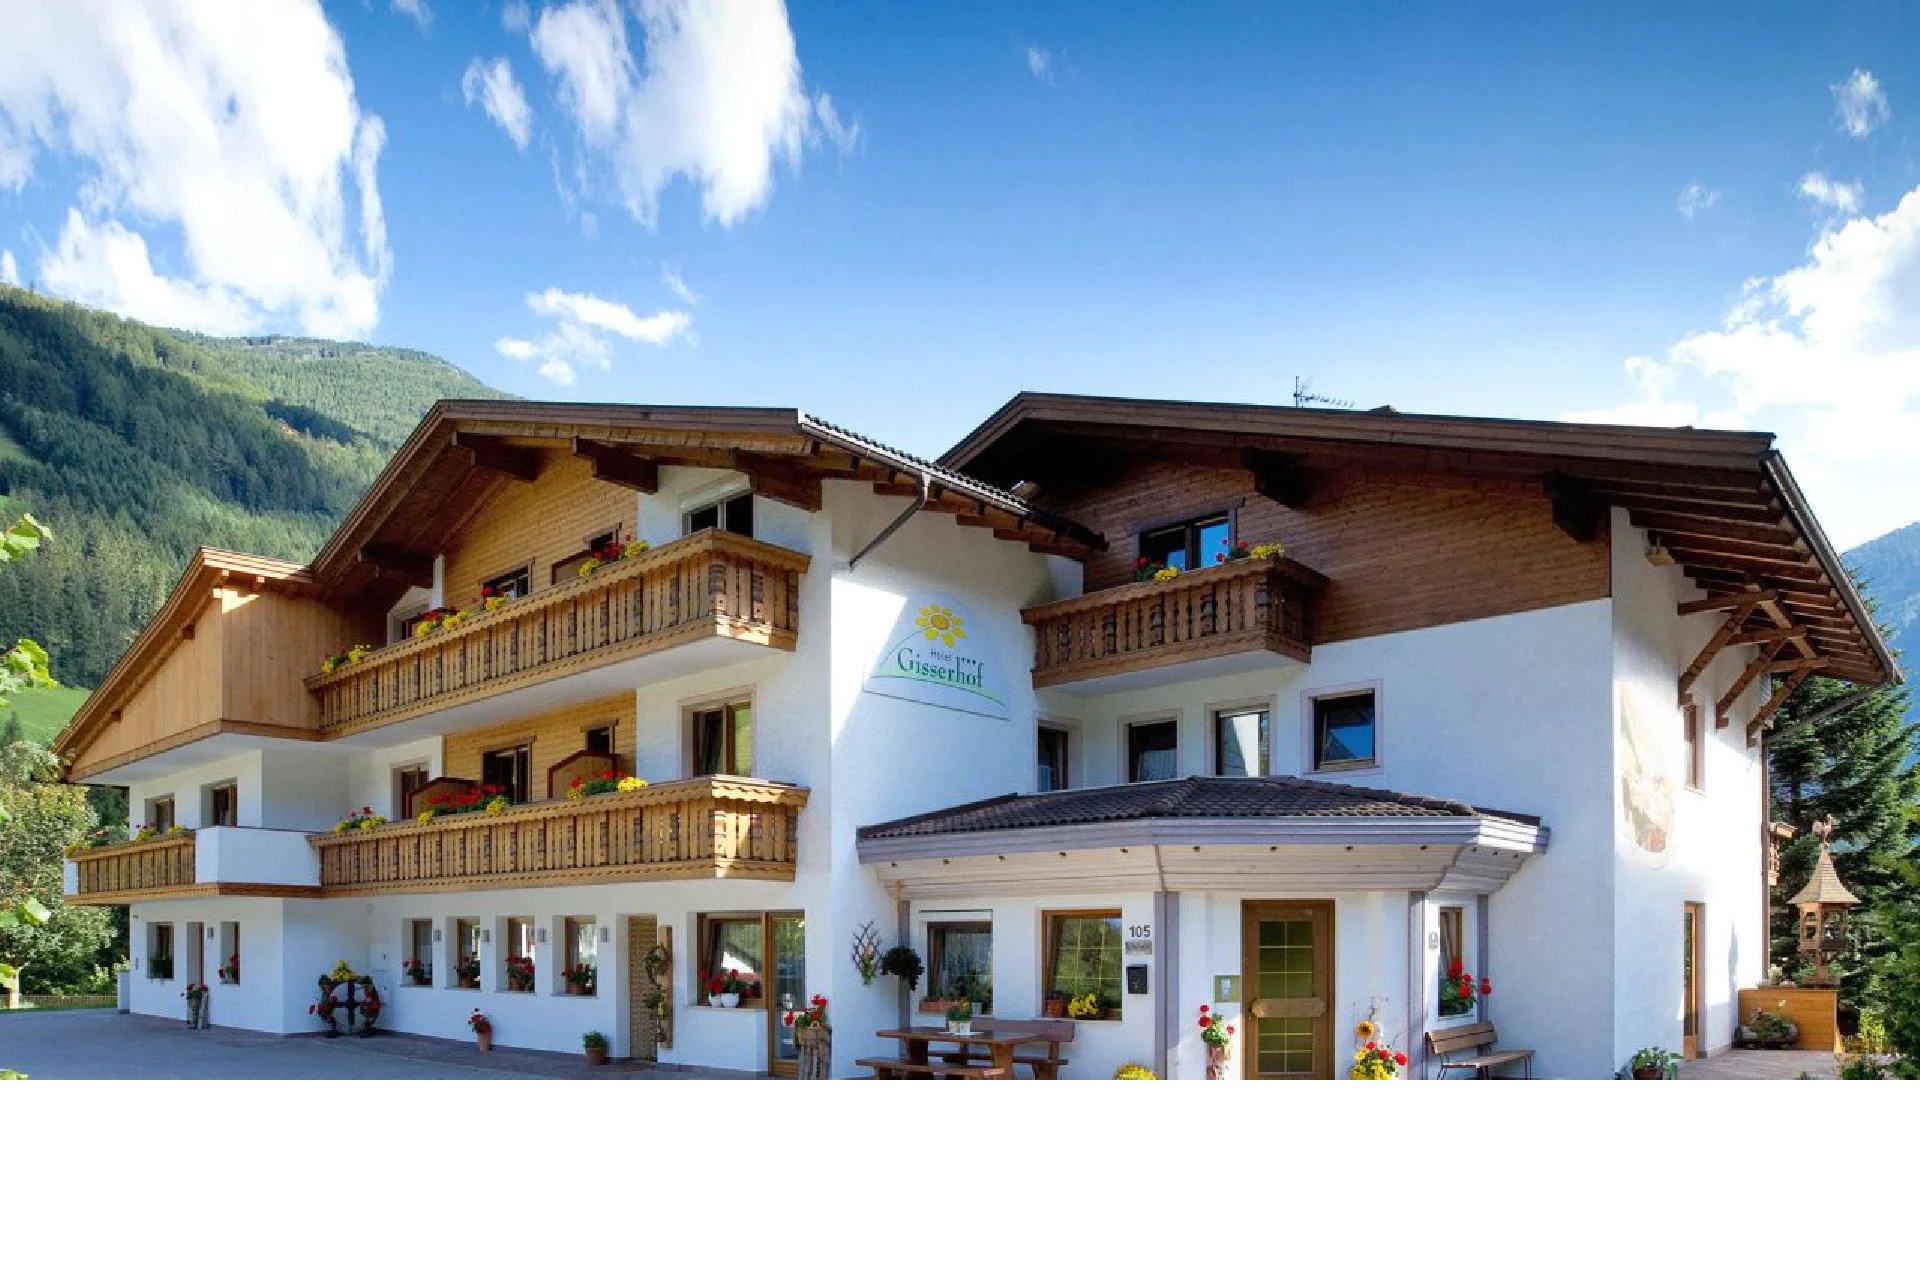 Gisserhof Hotel Valle Aurina 1 suedtirol.info